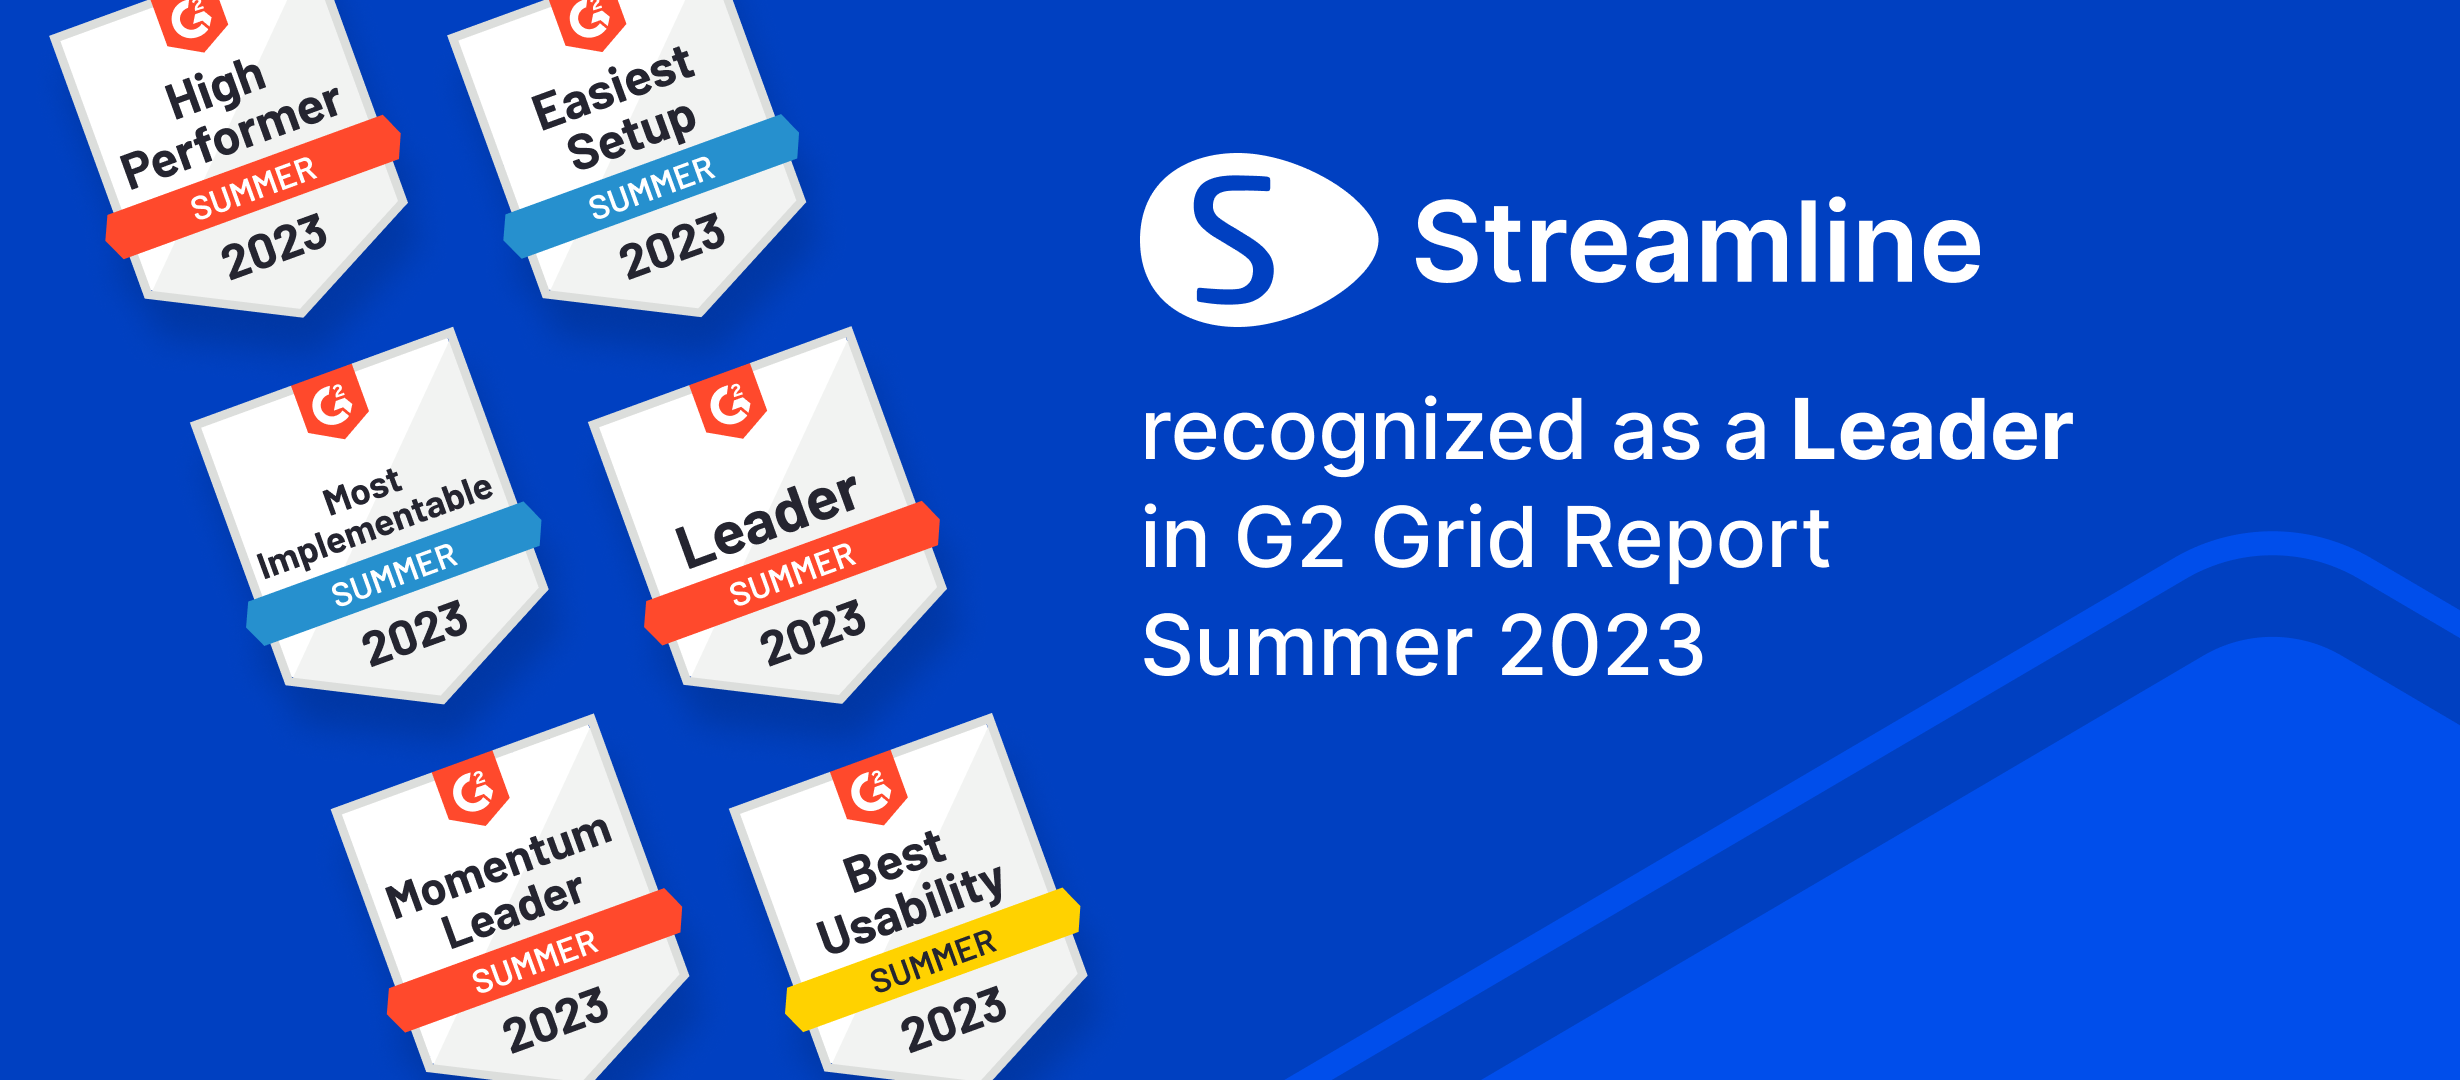 GMDH Streamline kåret til en leder på tvers av flere kategorier i G2 Summer'23-rapporter | GMDH